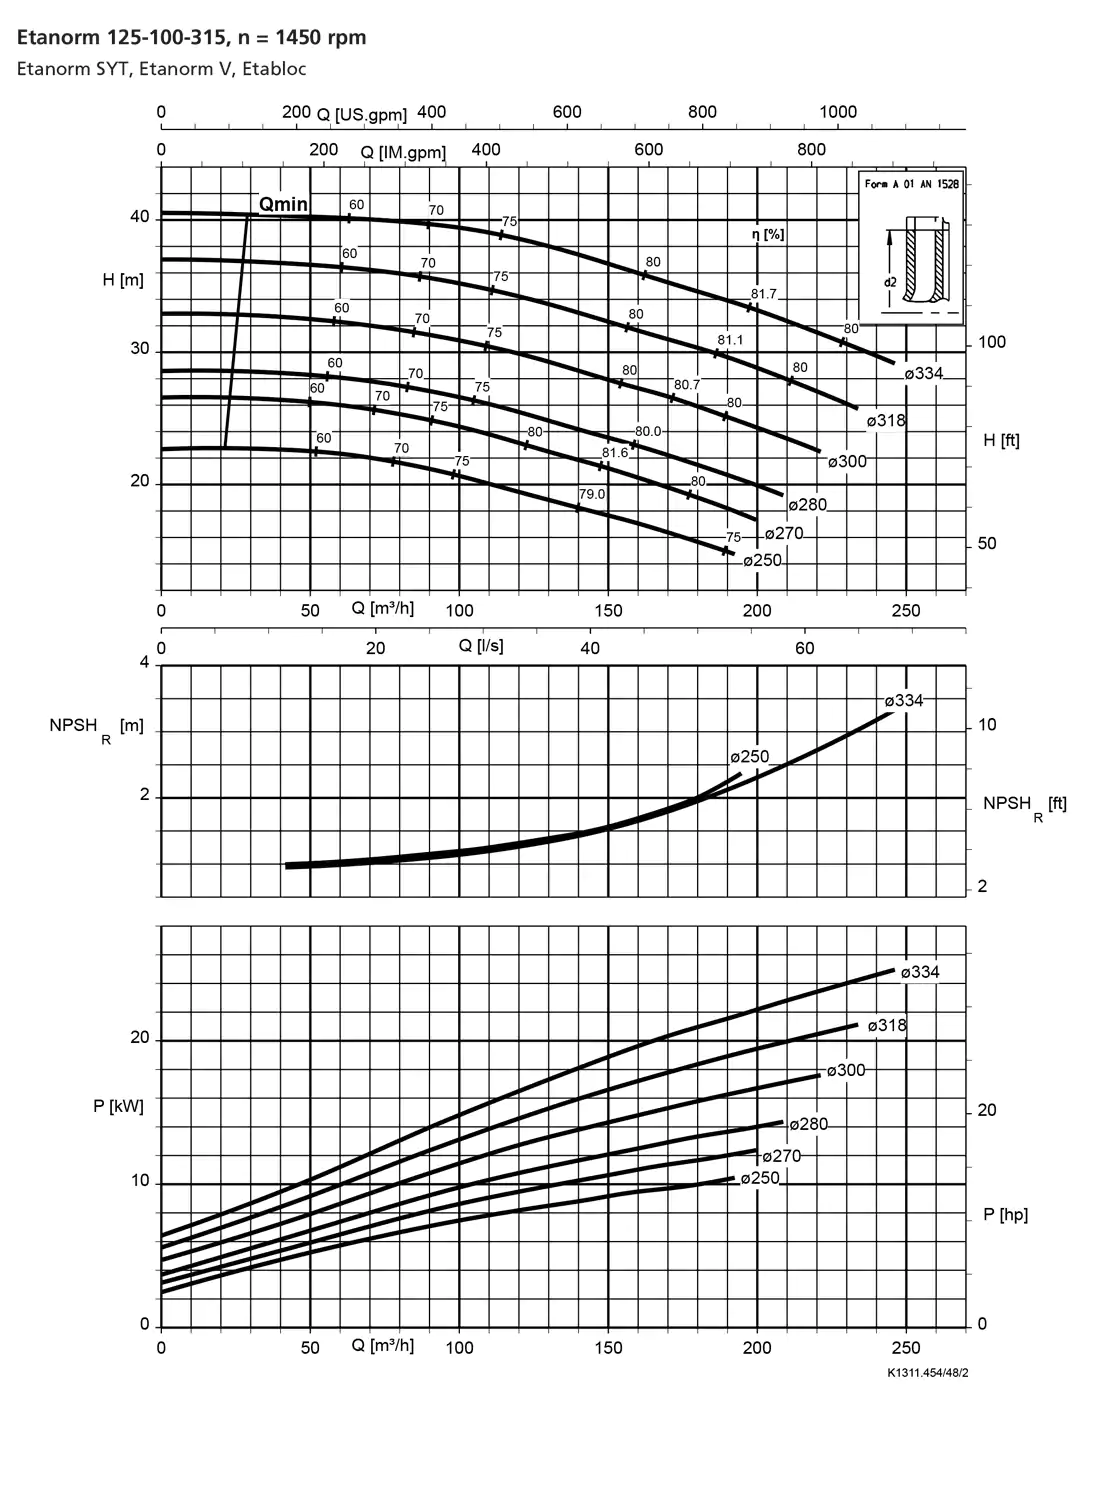 نمودار-کارکرد-پمپ-etanorm-syt-125-100-315-1450